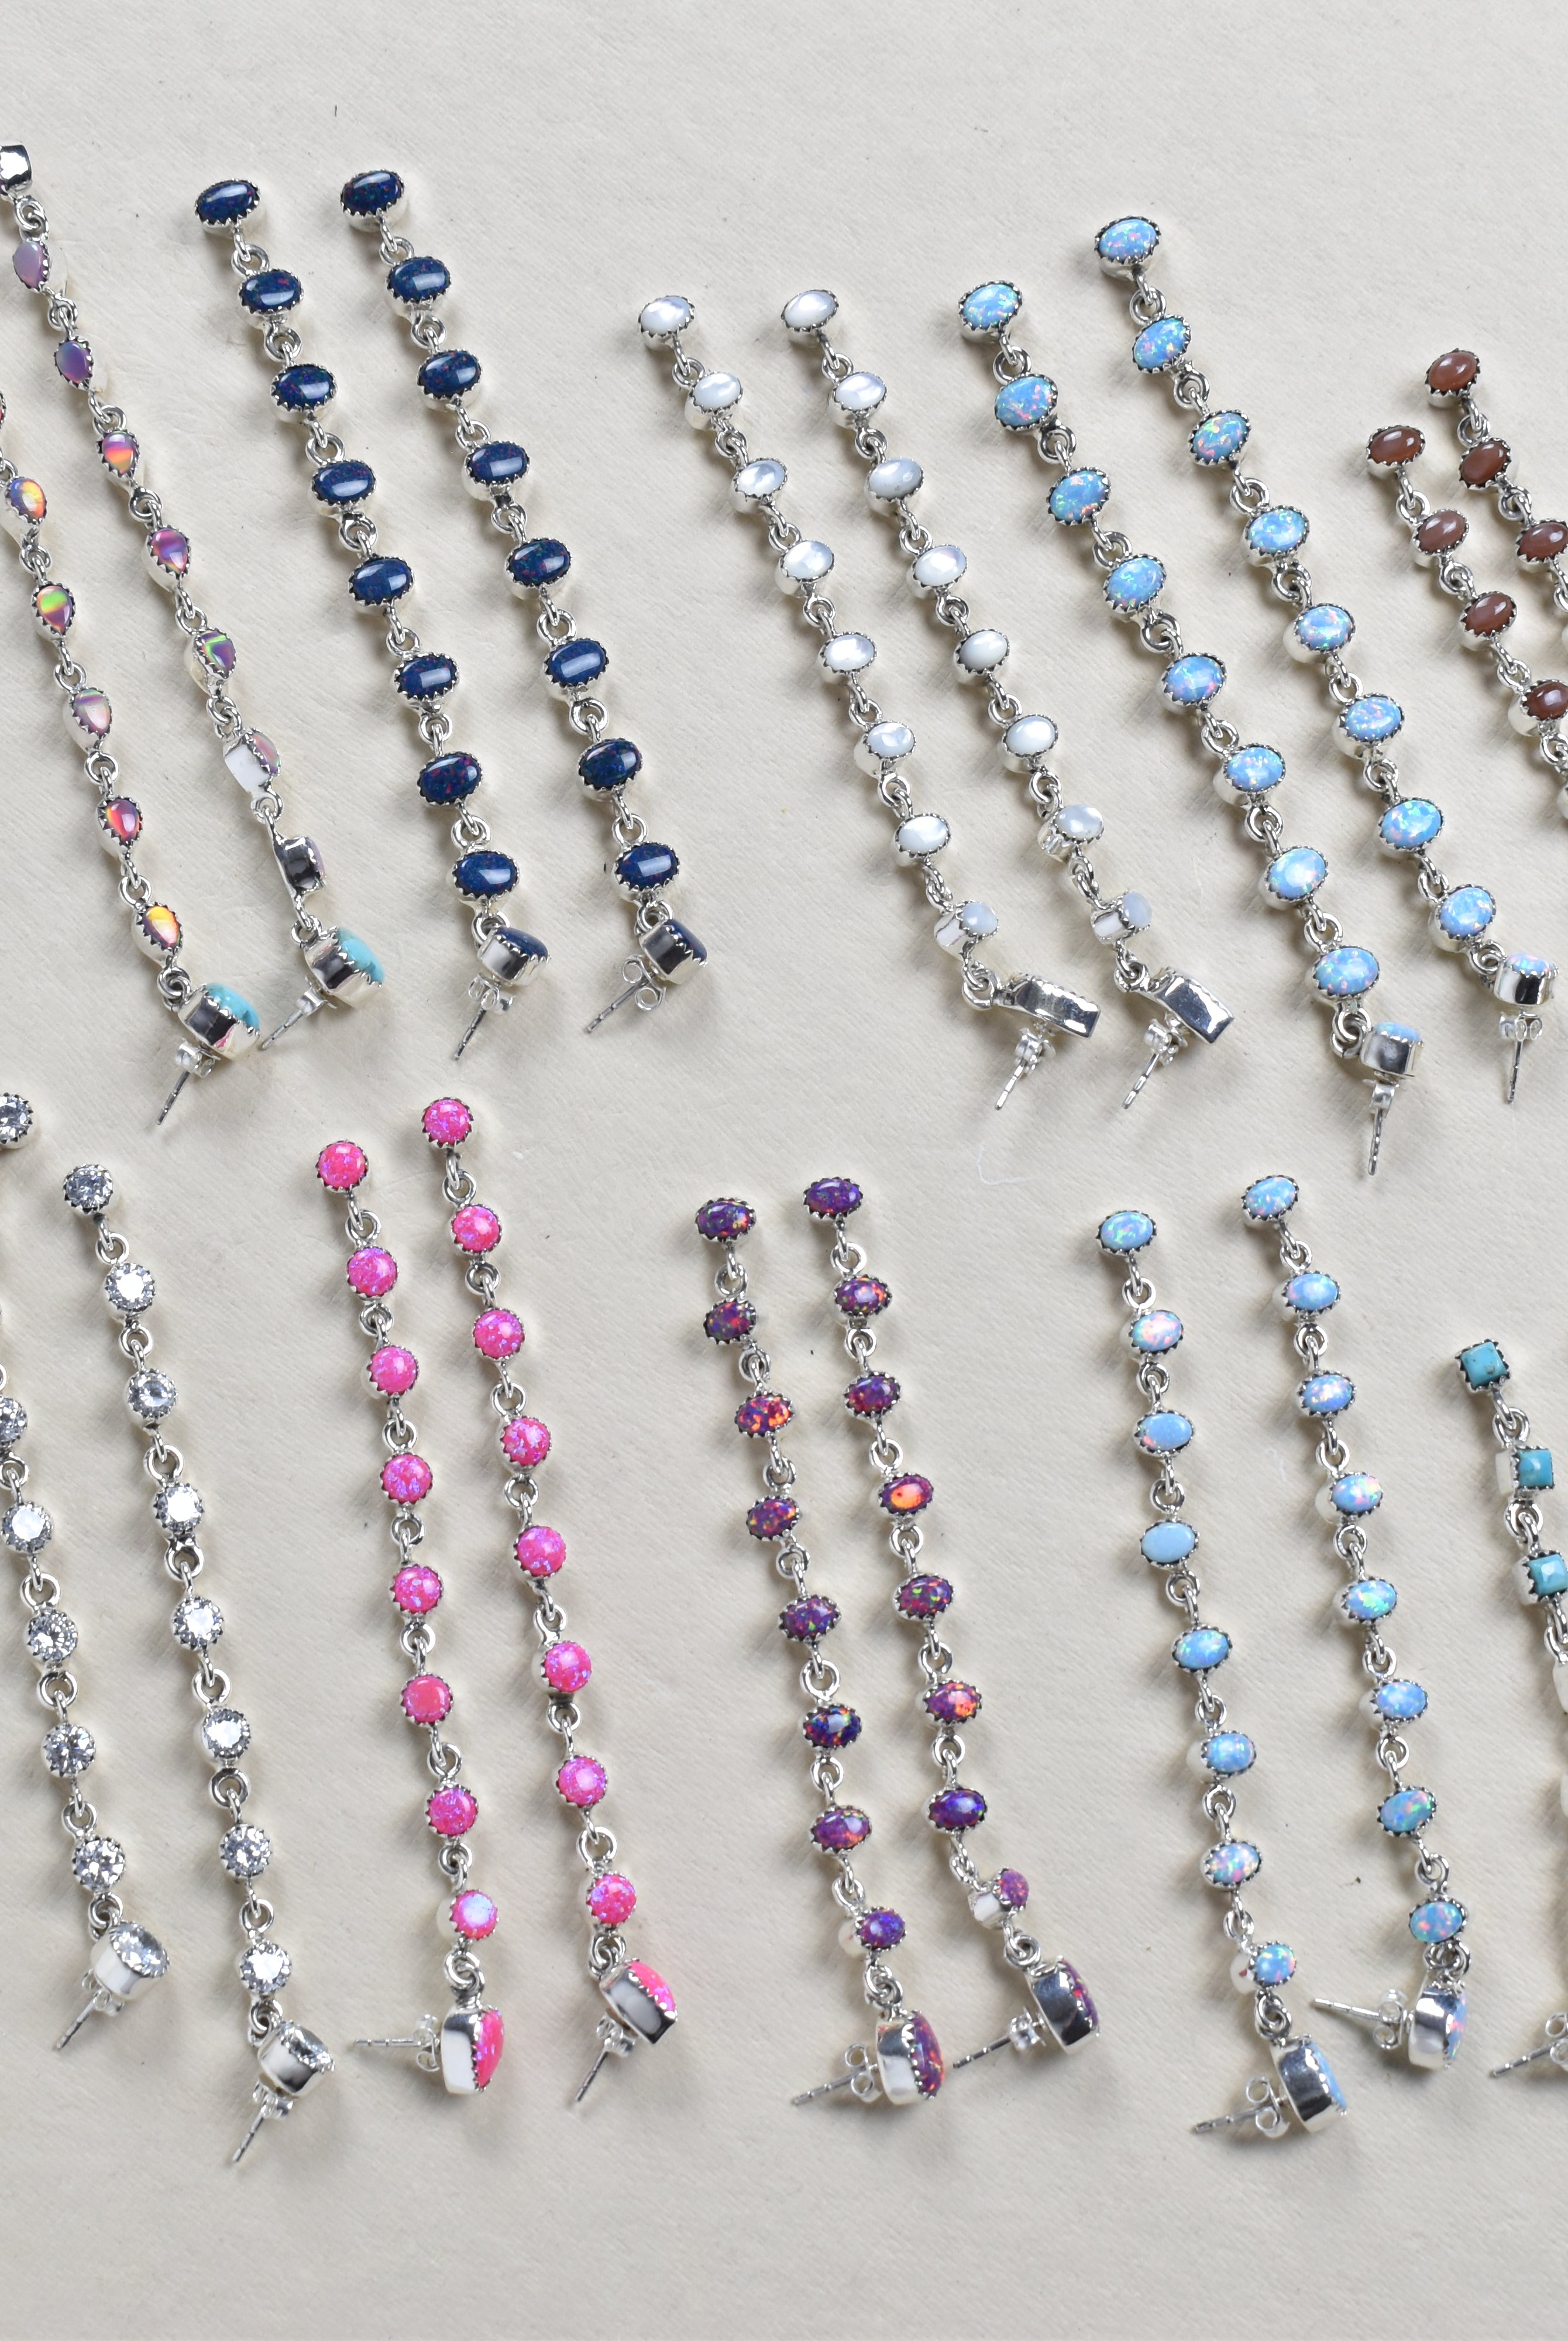 String Em Up Elegant Dangle Earrings-Earrings-Krush Kandy, Women's Online Fashion Boutique Located in Phoenix, Arizona (Scottsdale Area)